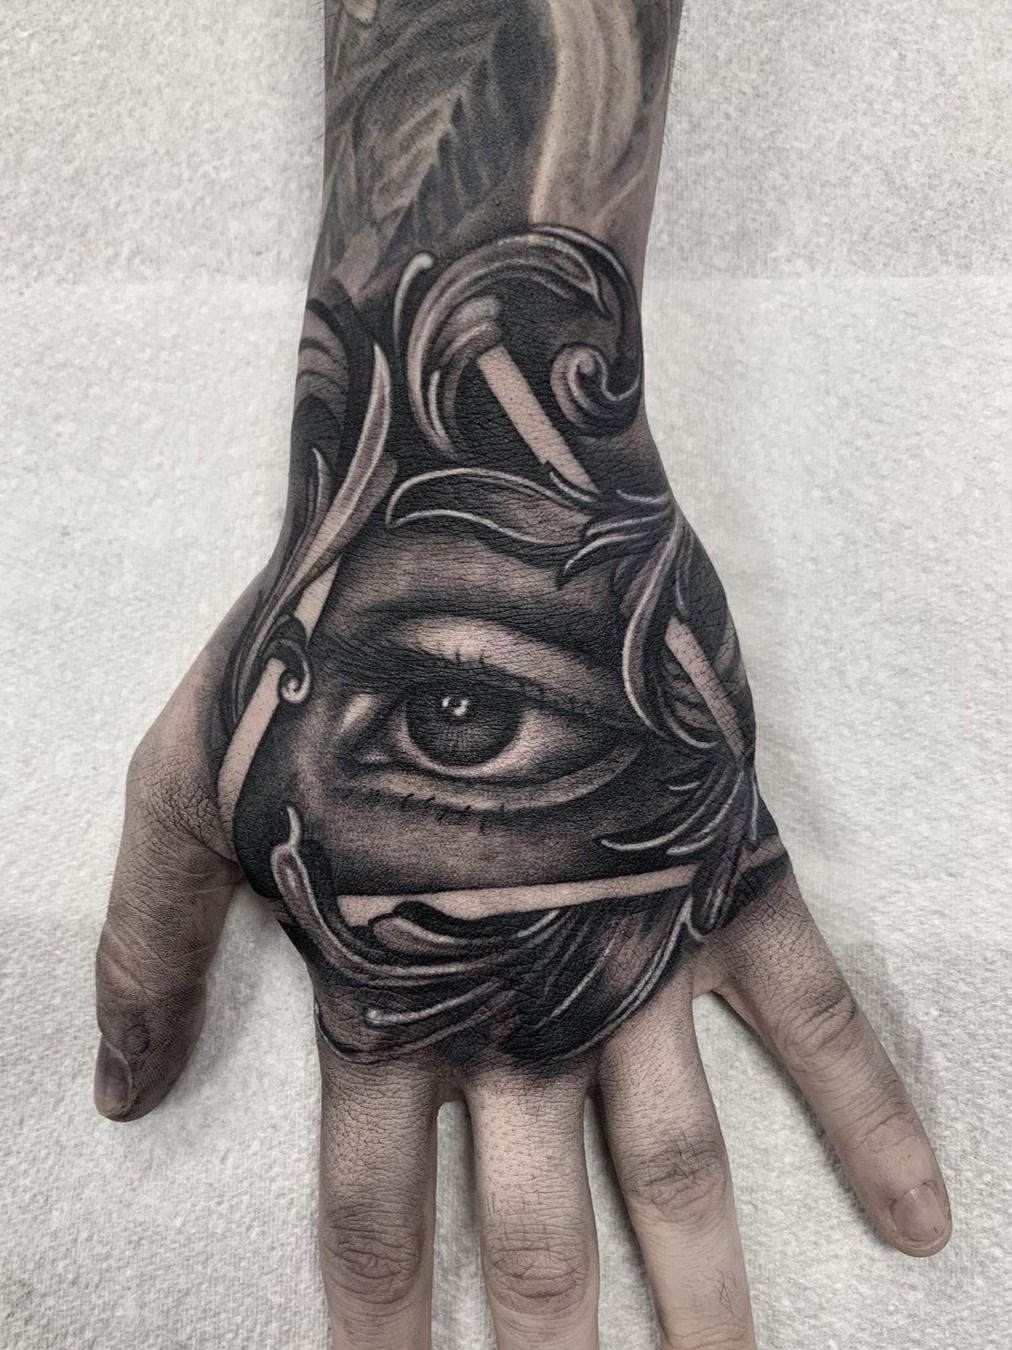 Realistic eye tattoo by Lee Reynolds  Eye tattoo Realistic eye tattoo Hand  eye tattoo